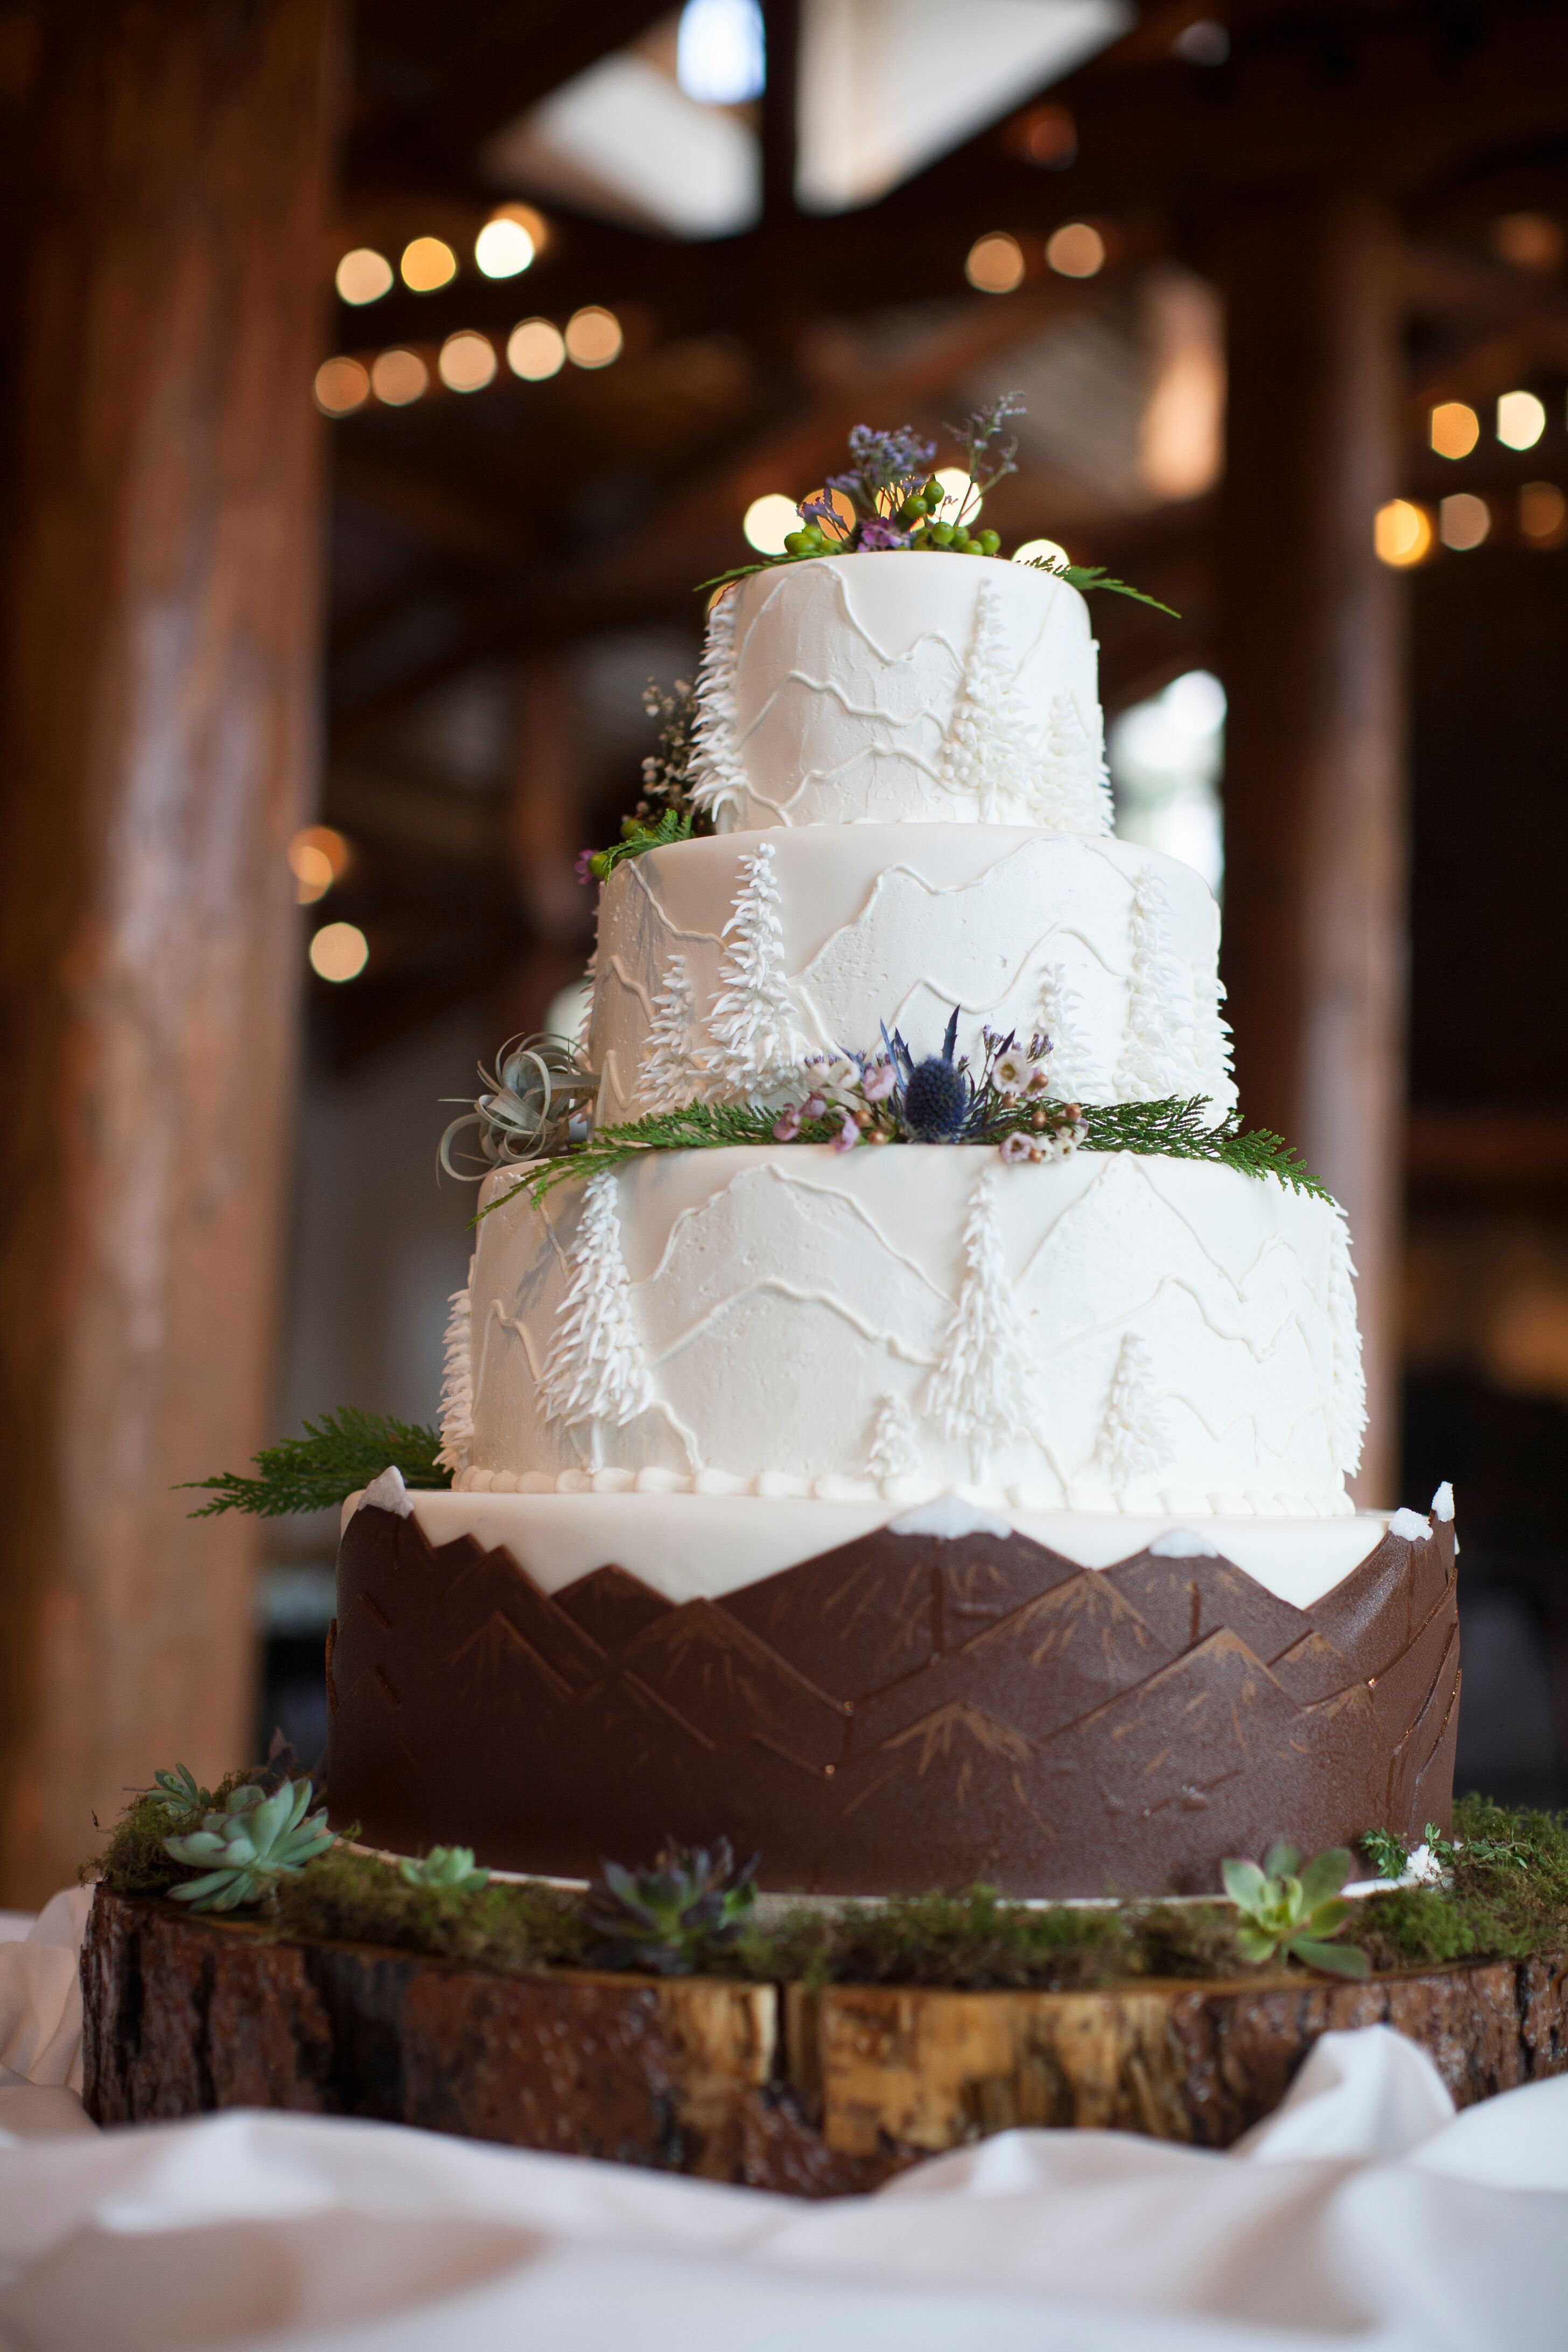 Outdoorsy Mountain Wedding Cake